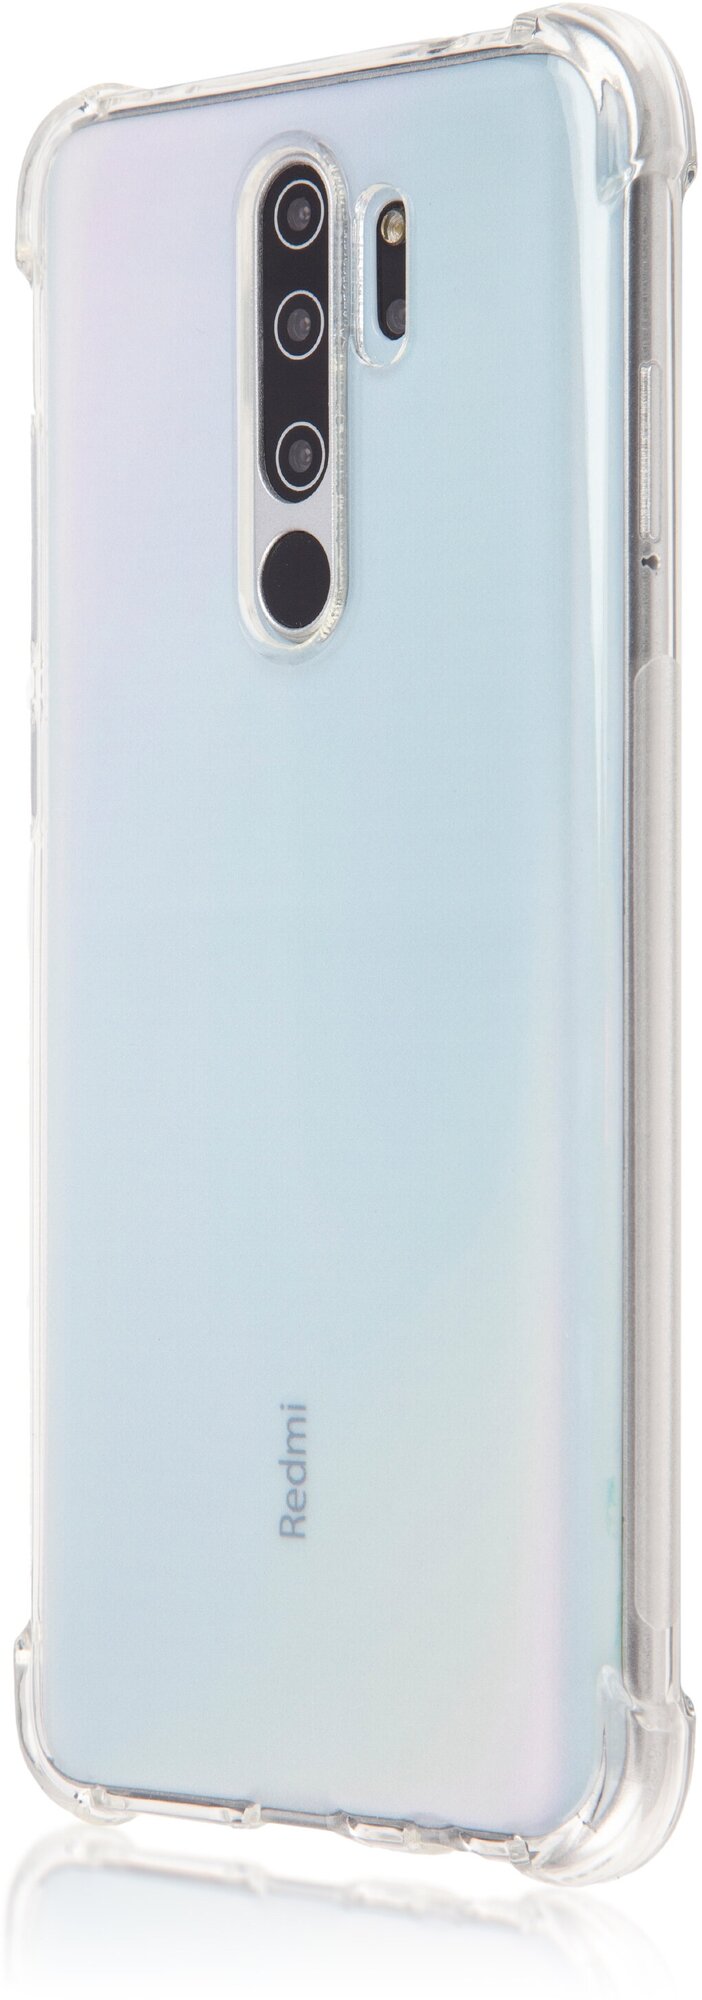 ROSCO/ Противоударный чехол для Xiaomi Redmi Note 8 Pro (Сяоми Редми Ноут 8 Про) силикон, усиленные углы, защита камер, прозрачный, бесцветный